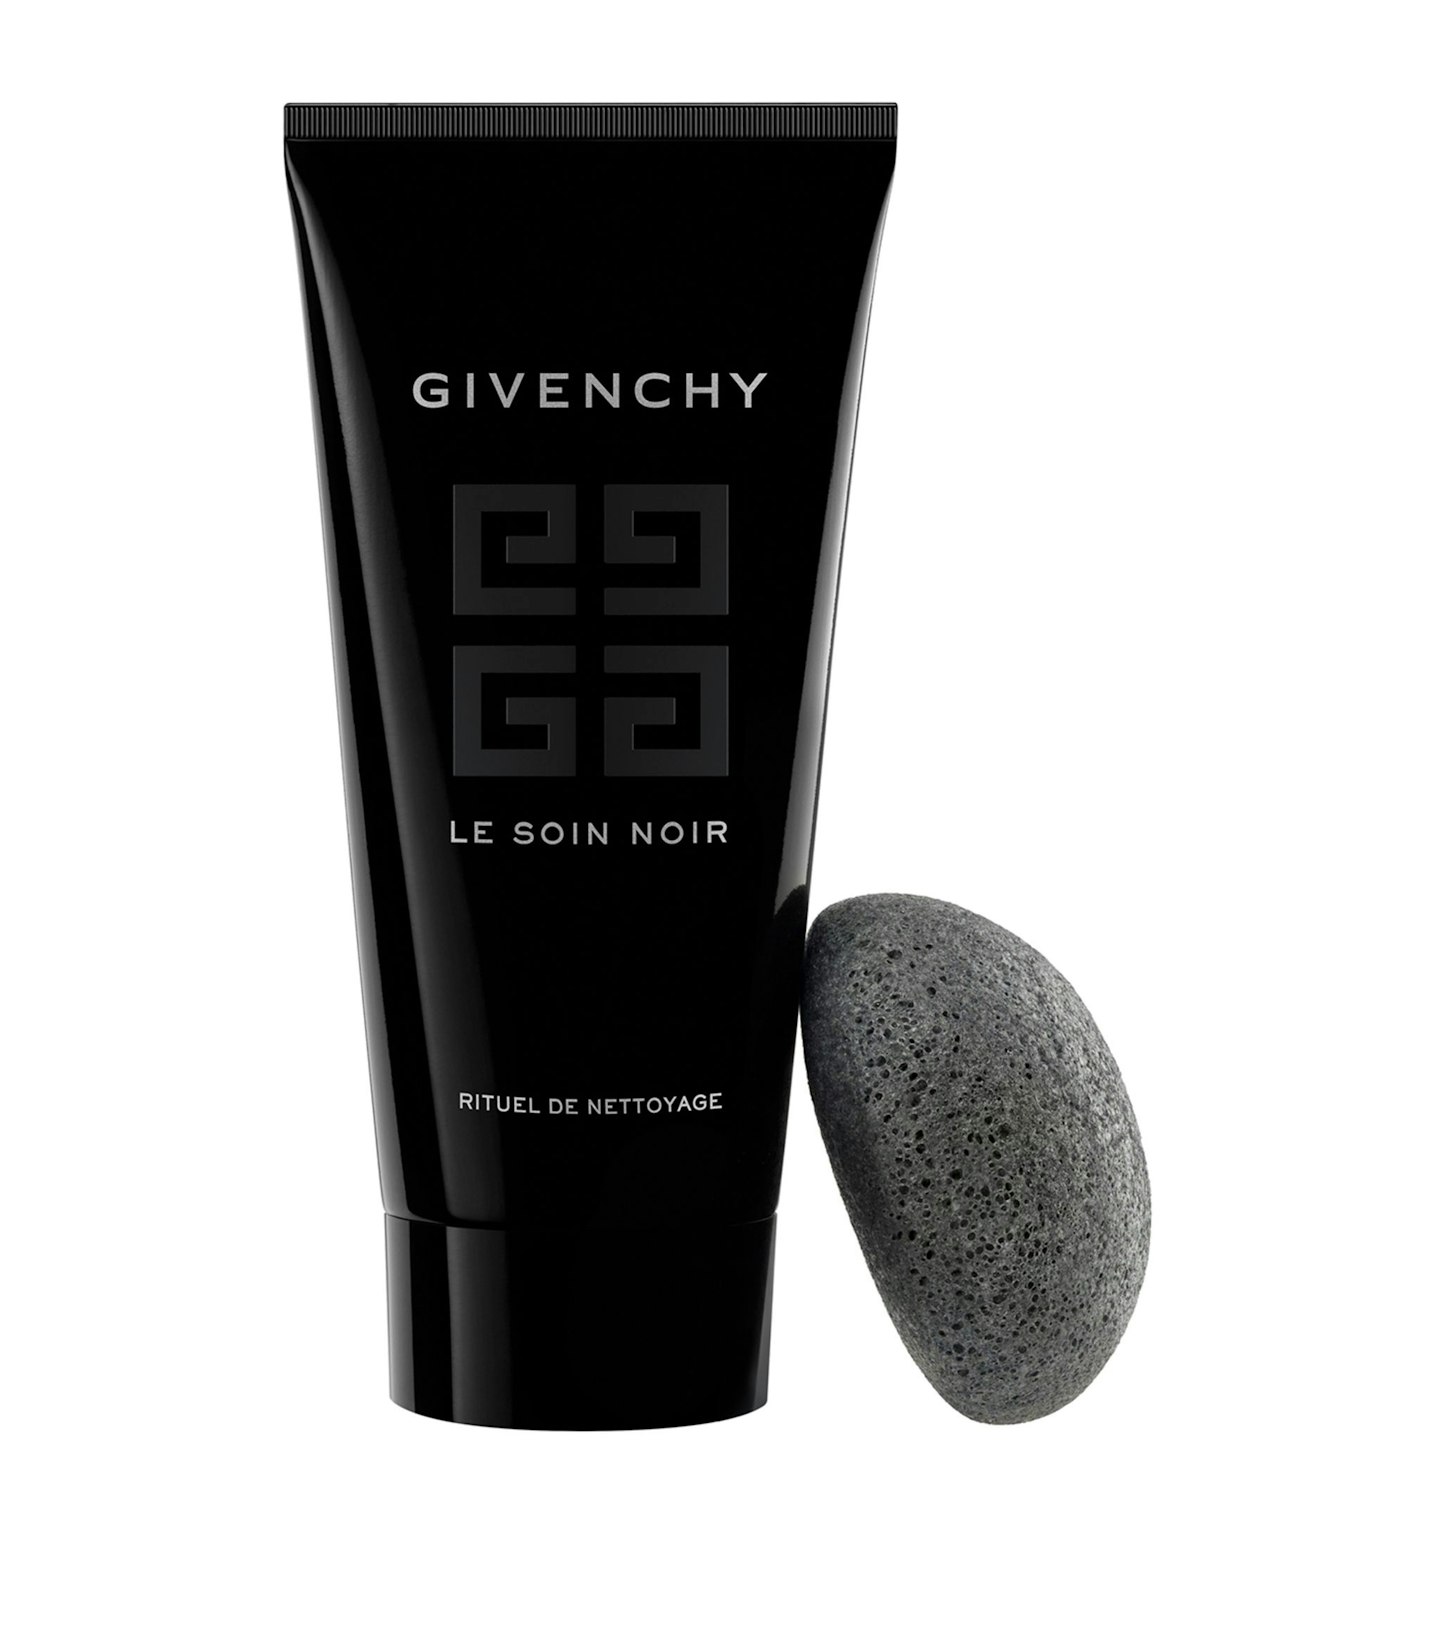 Givenchy Le Soin Noir Rituel de Nottoyage Cleanser